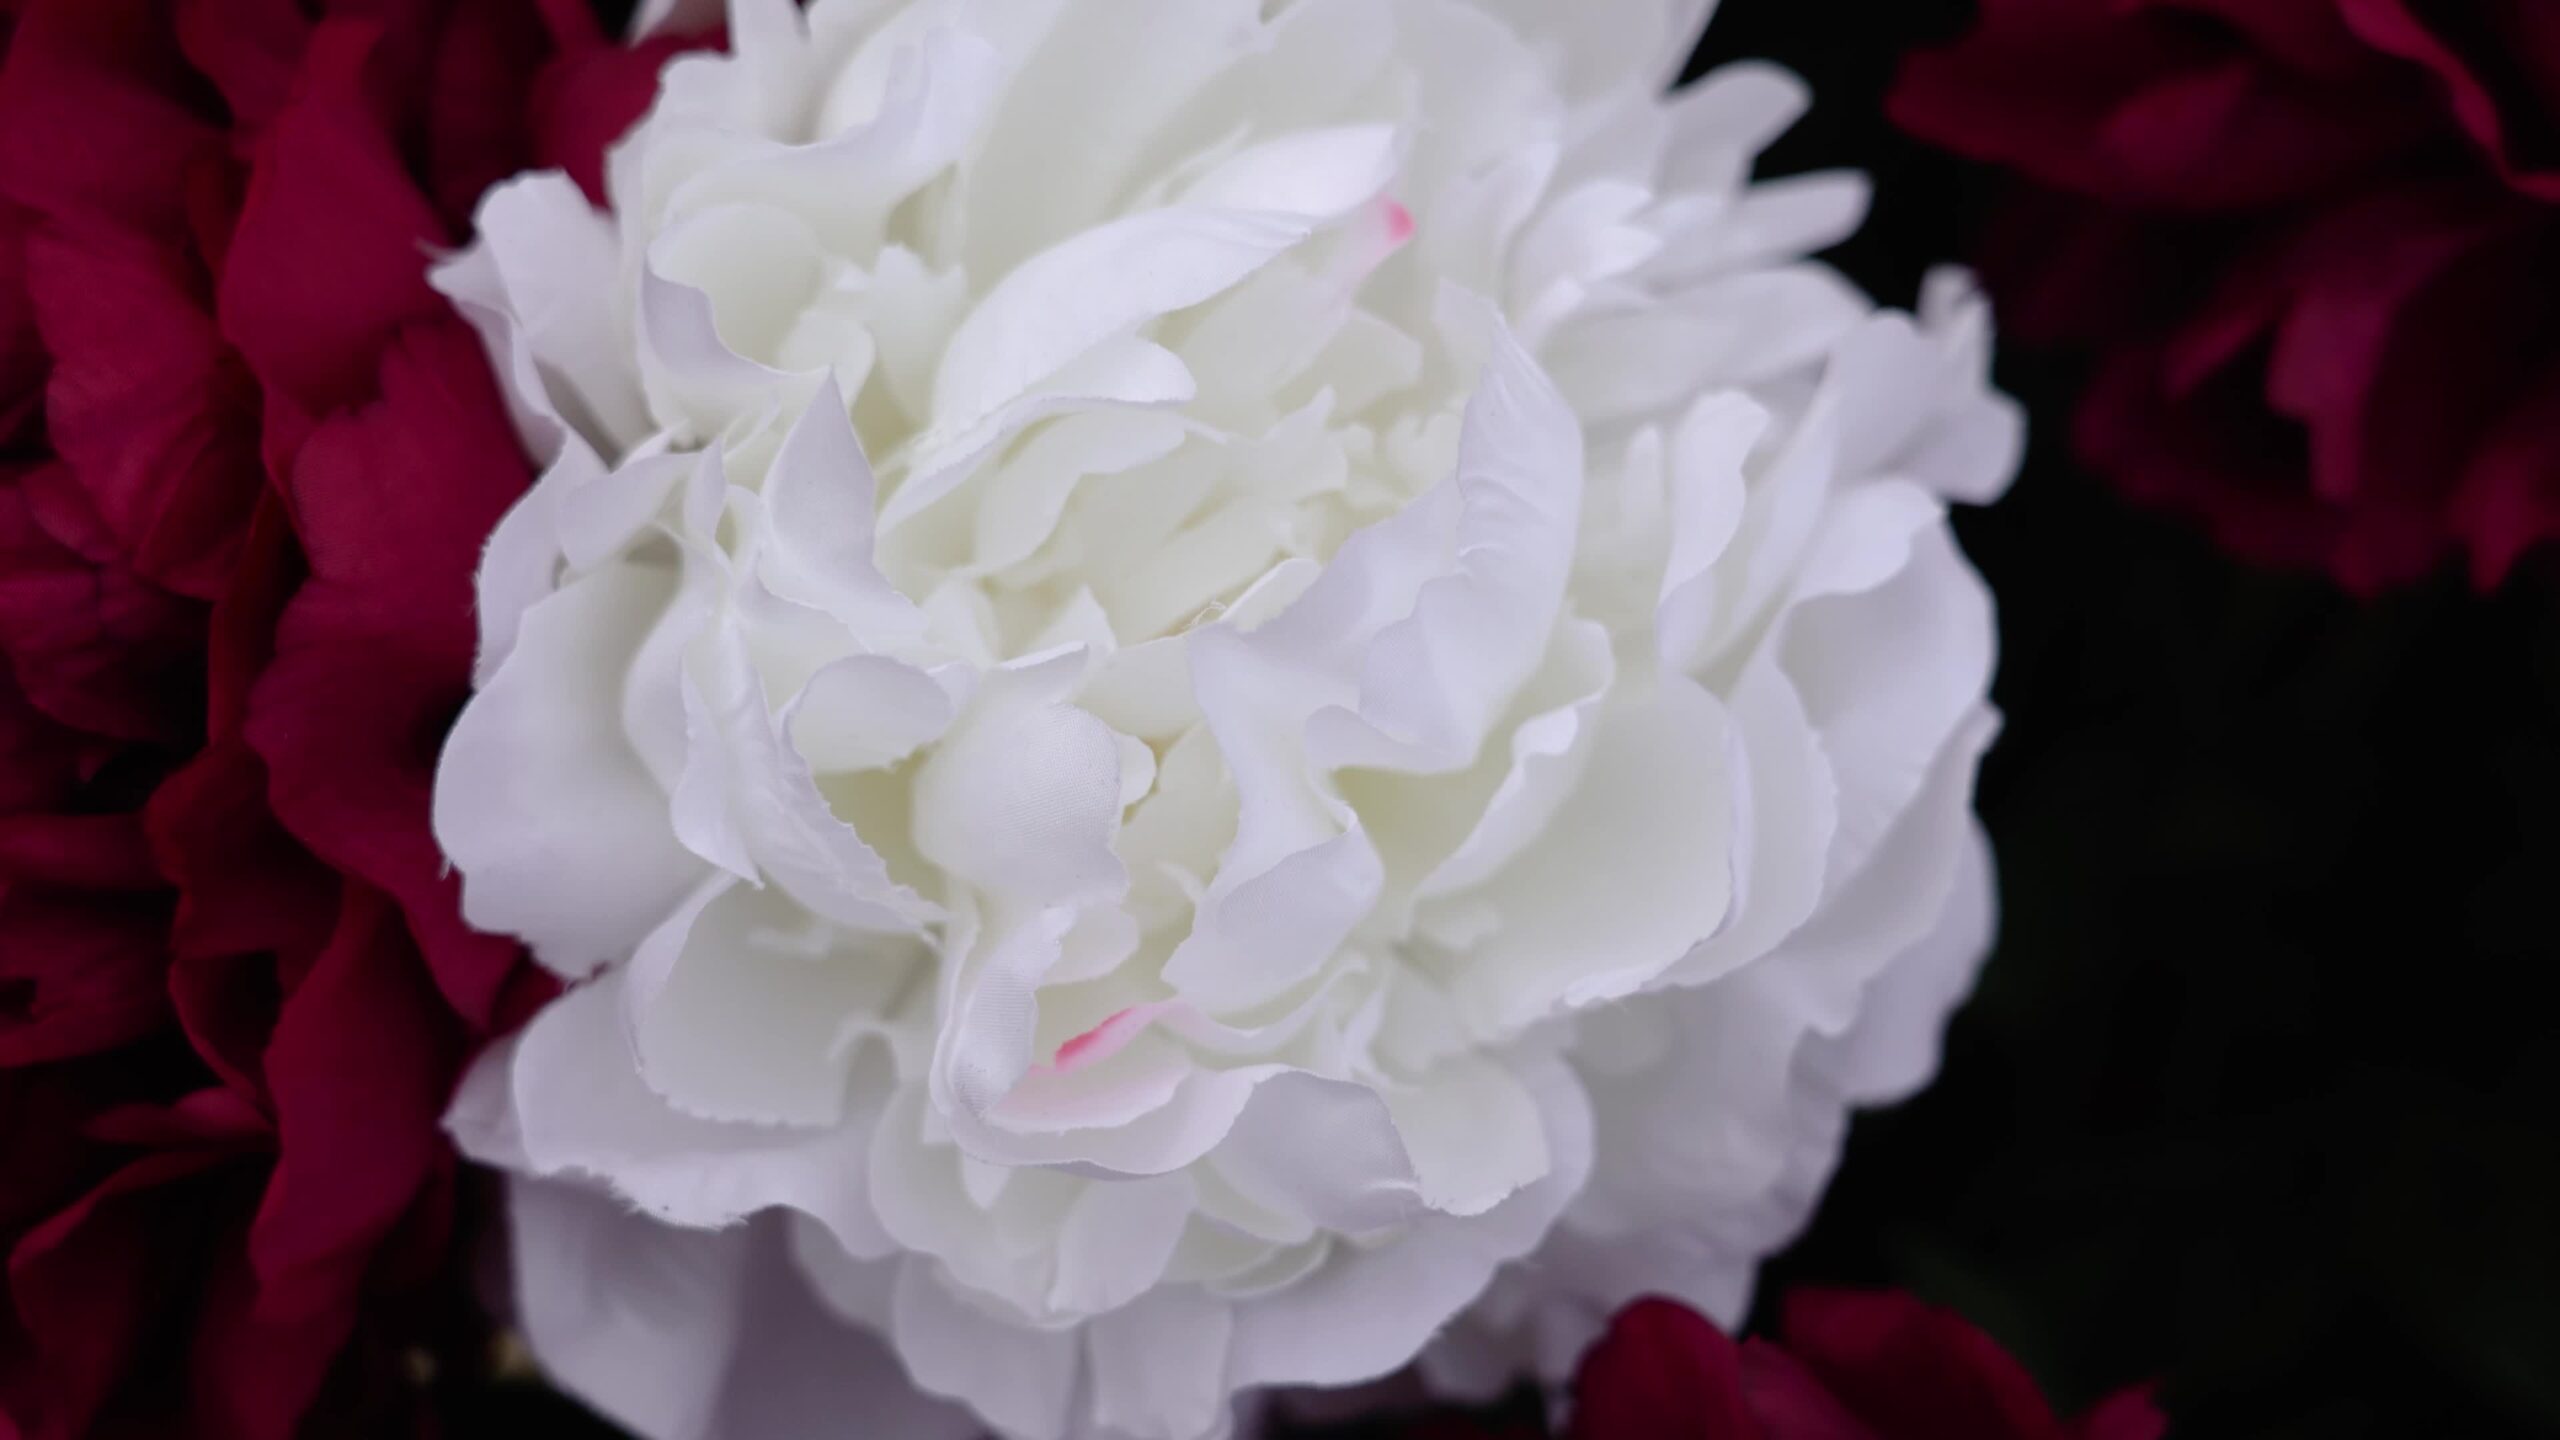 Fiore di peonia bianca pittoresco tra petali rossi colorati